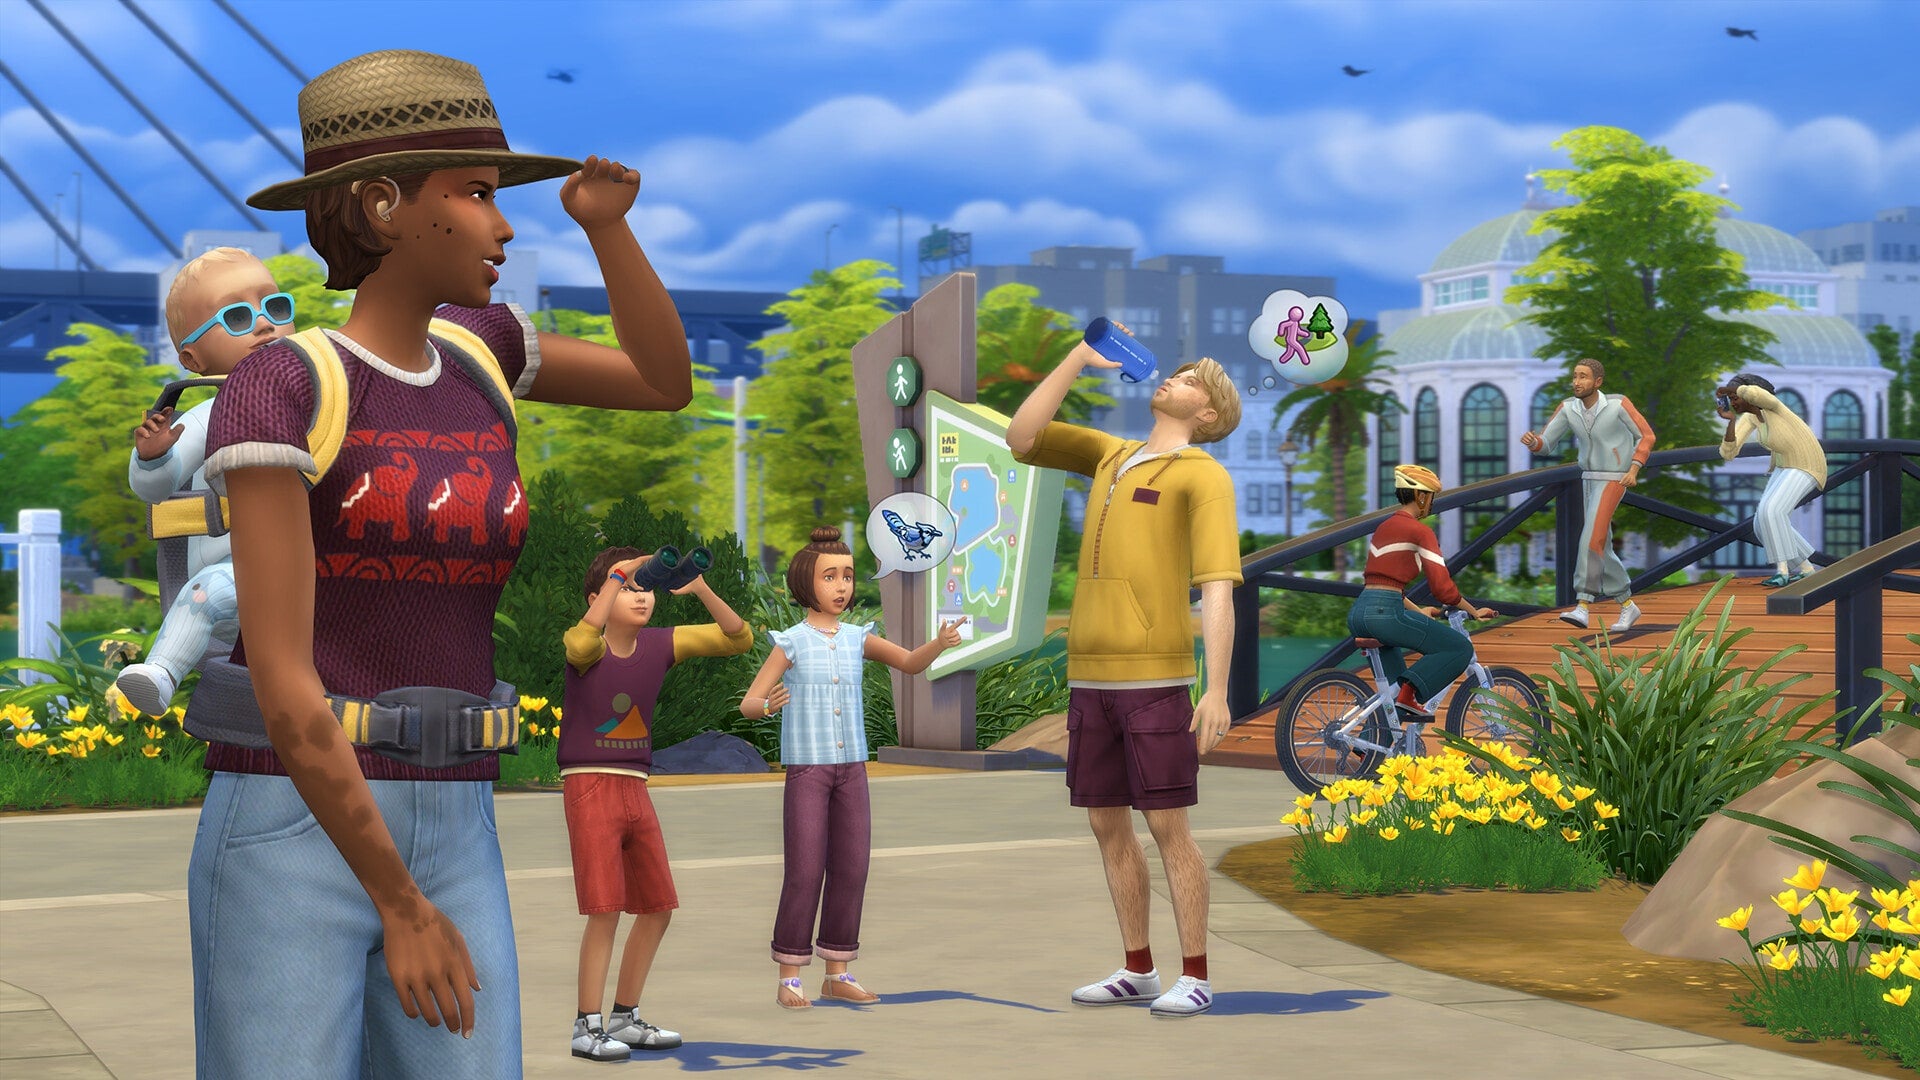 The Sims 4: Growing Together | PC Mac | Origin/EA Digital Download | Screenshot